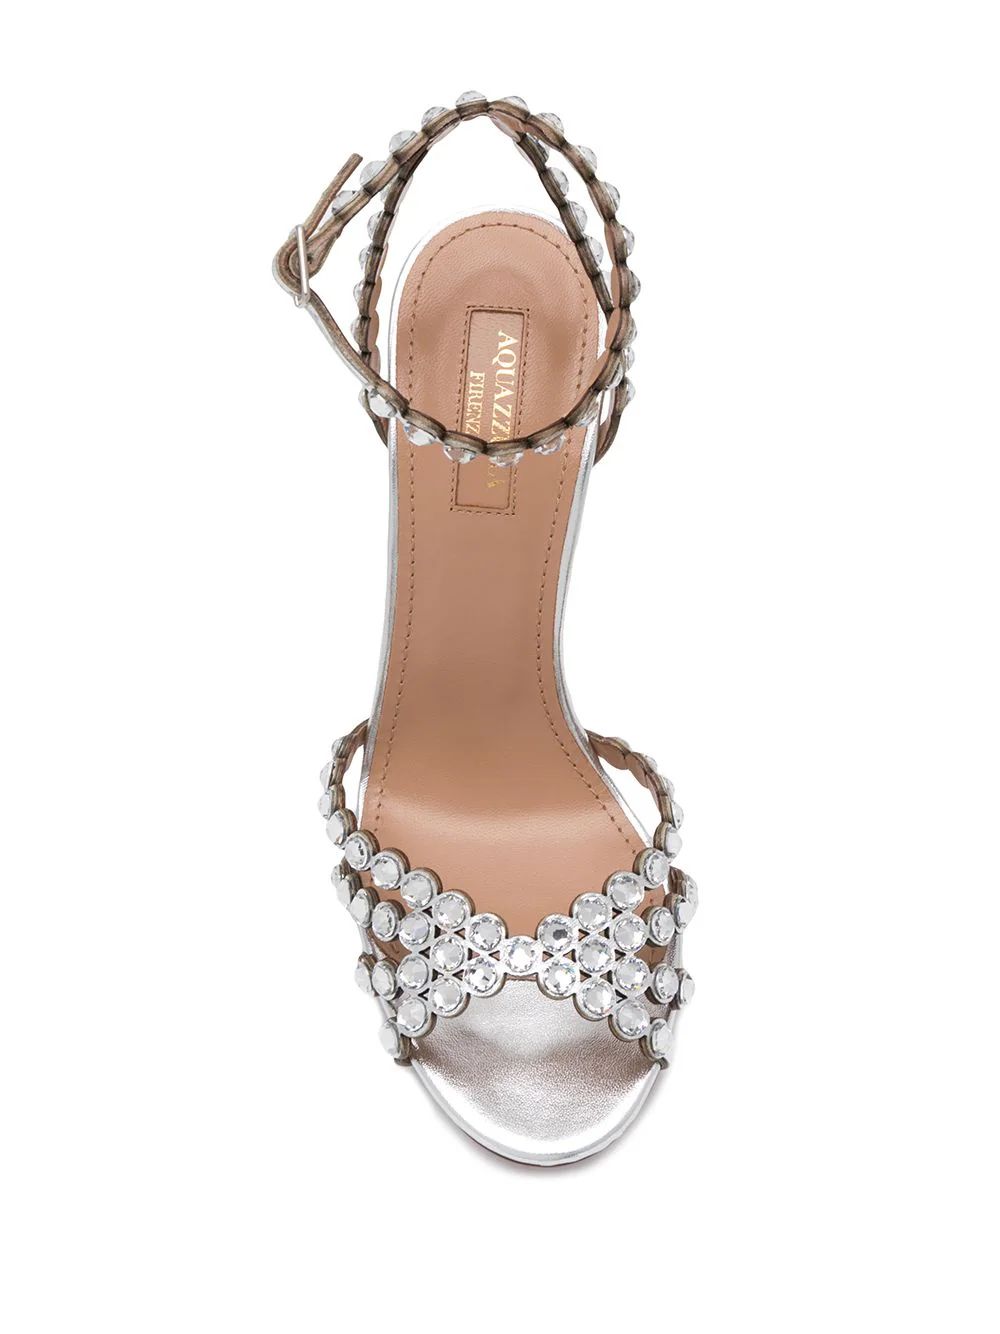 Aquazzura Tequila 105mm Crystal Embellished Sandals - Farfetch | Farfetch Global